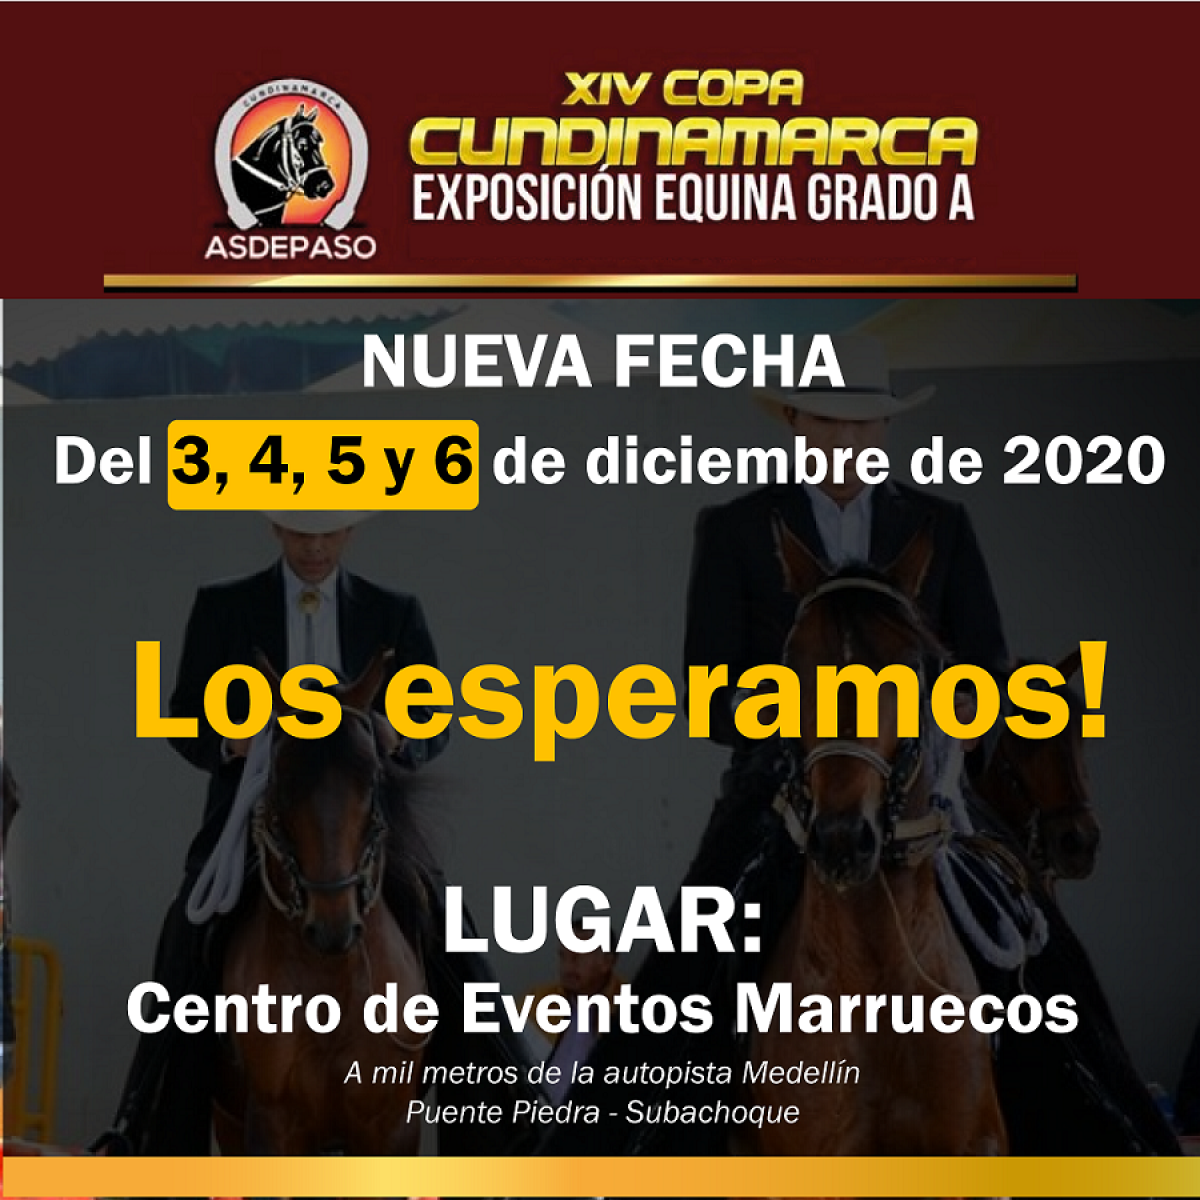 NUEVA SEDE Y FECHA DE LA COPA CUNDINAMARCA 2020